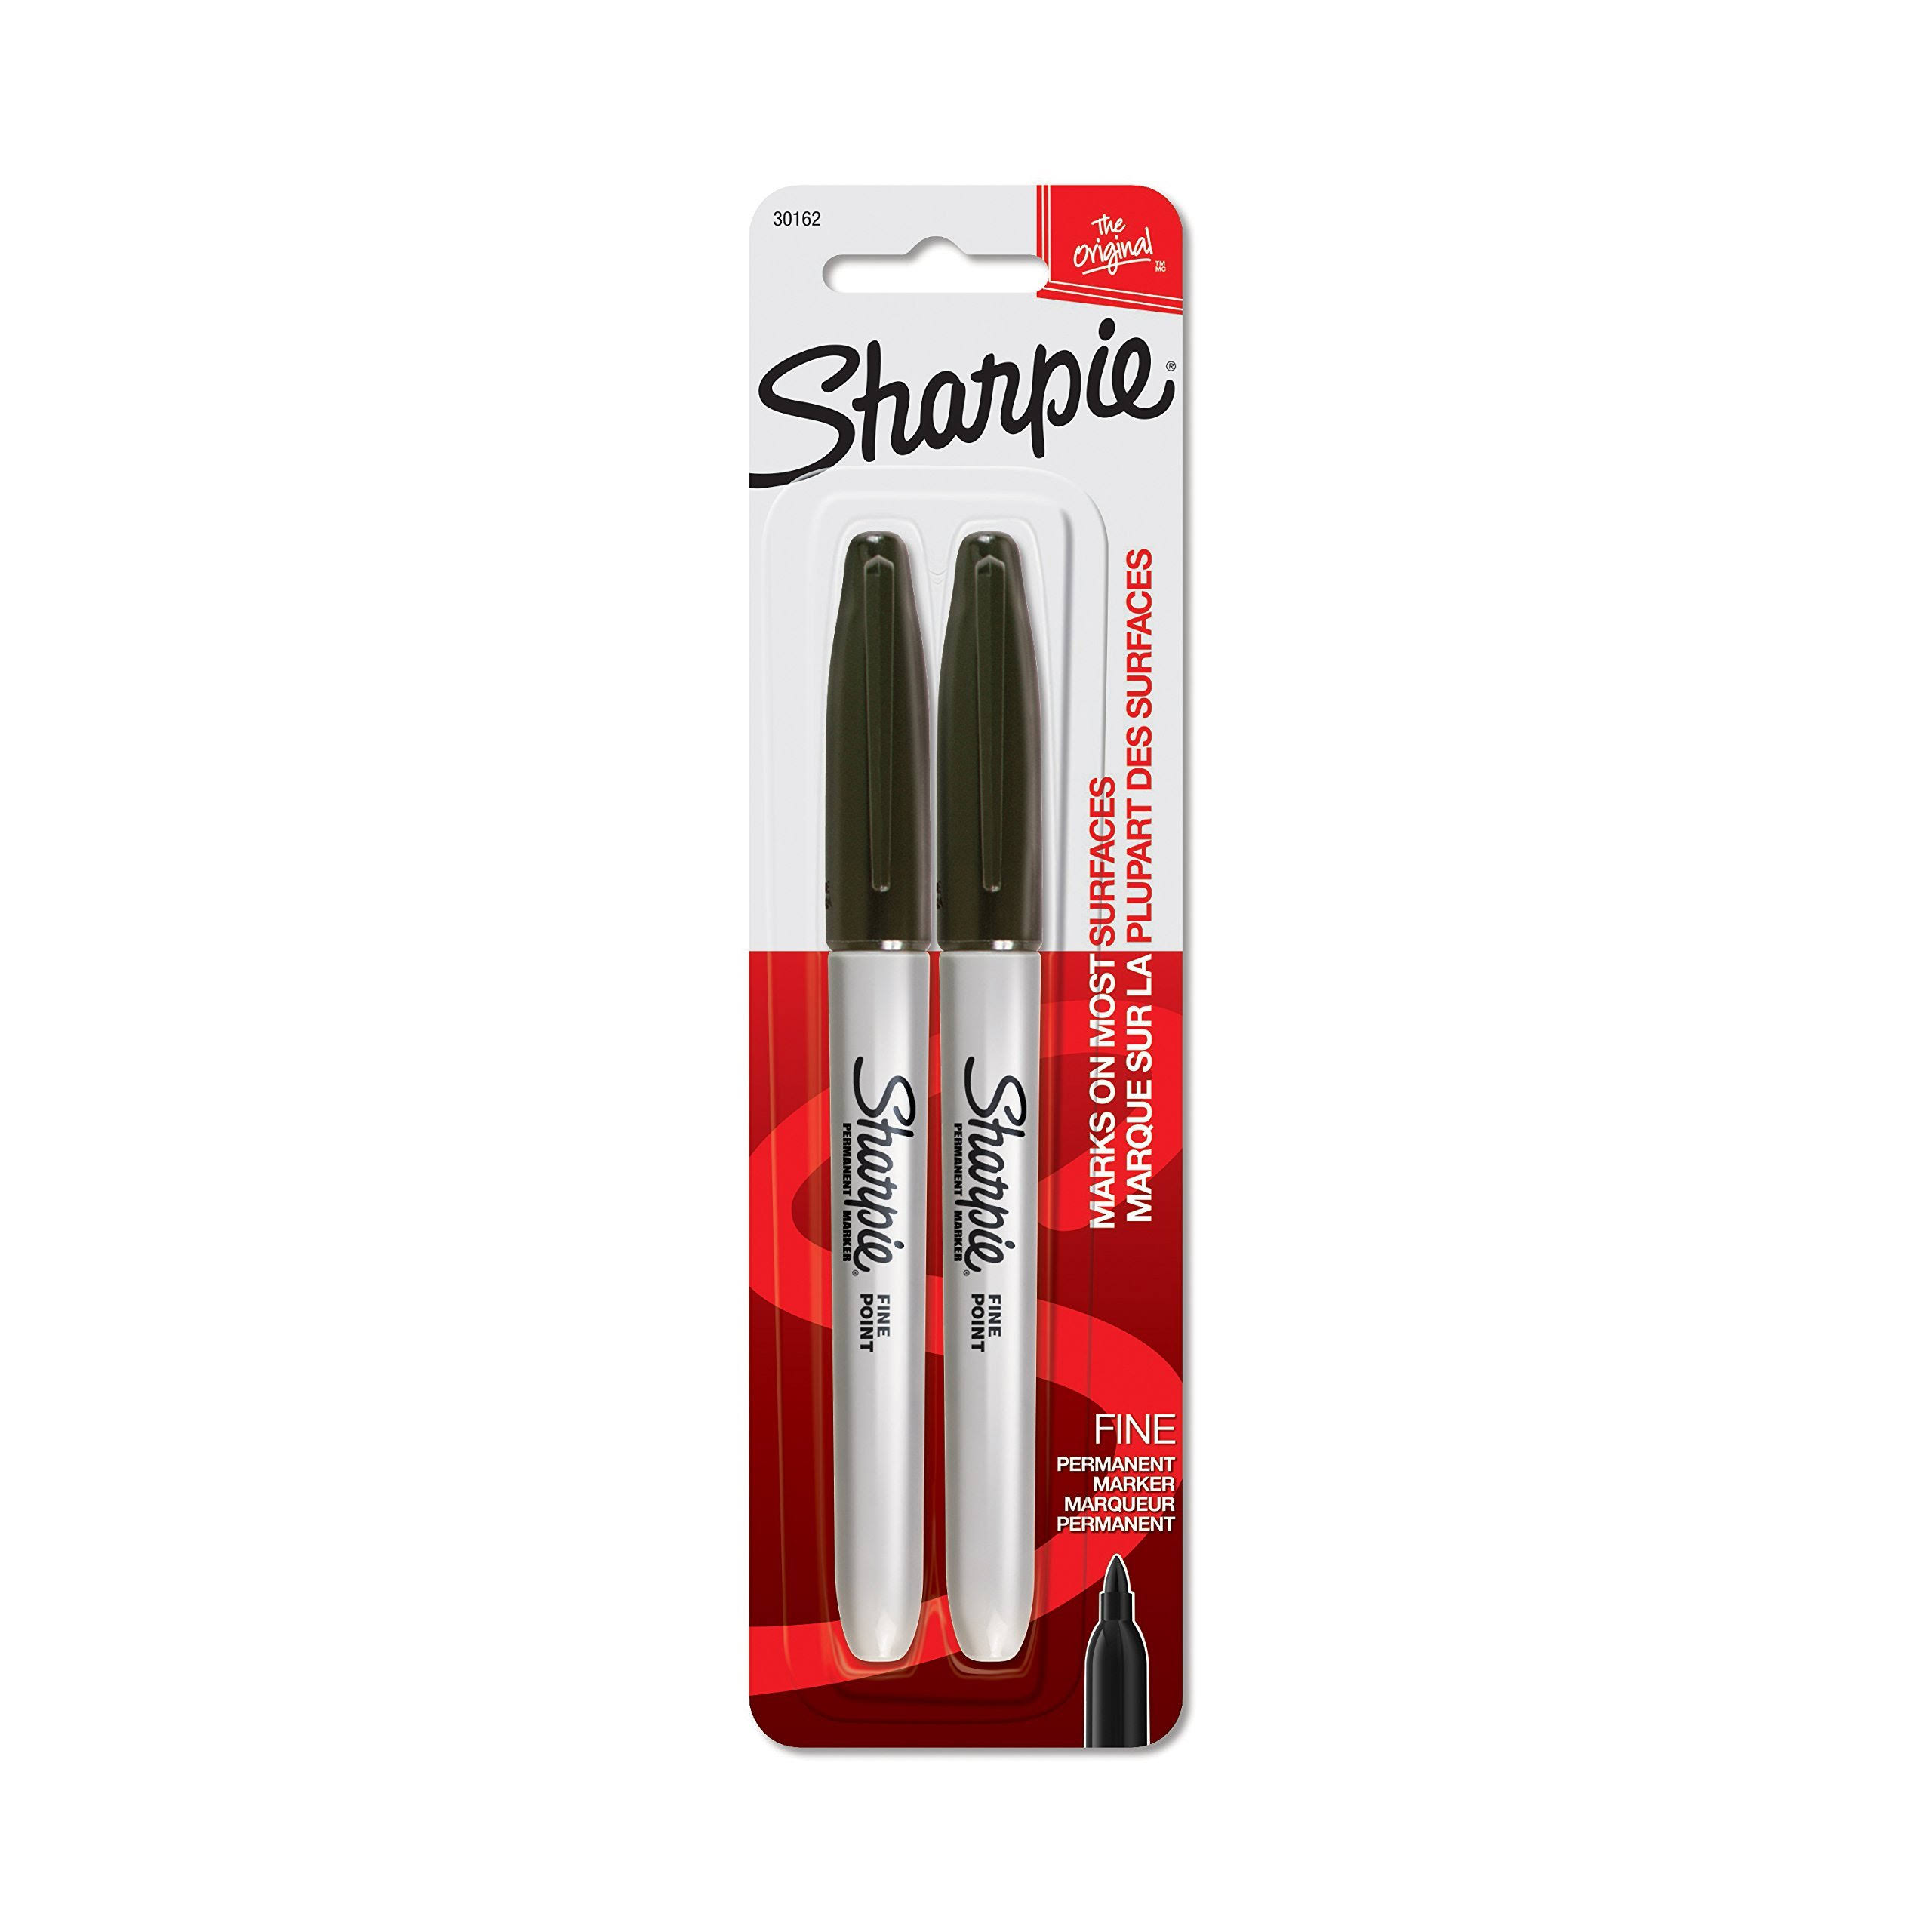 Sharpie Permanent Marker - Black, Fine Point, Black